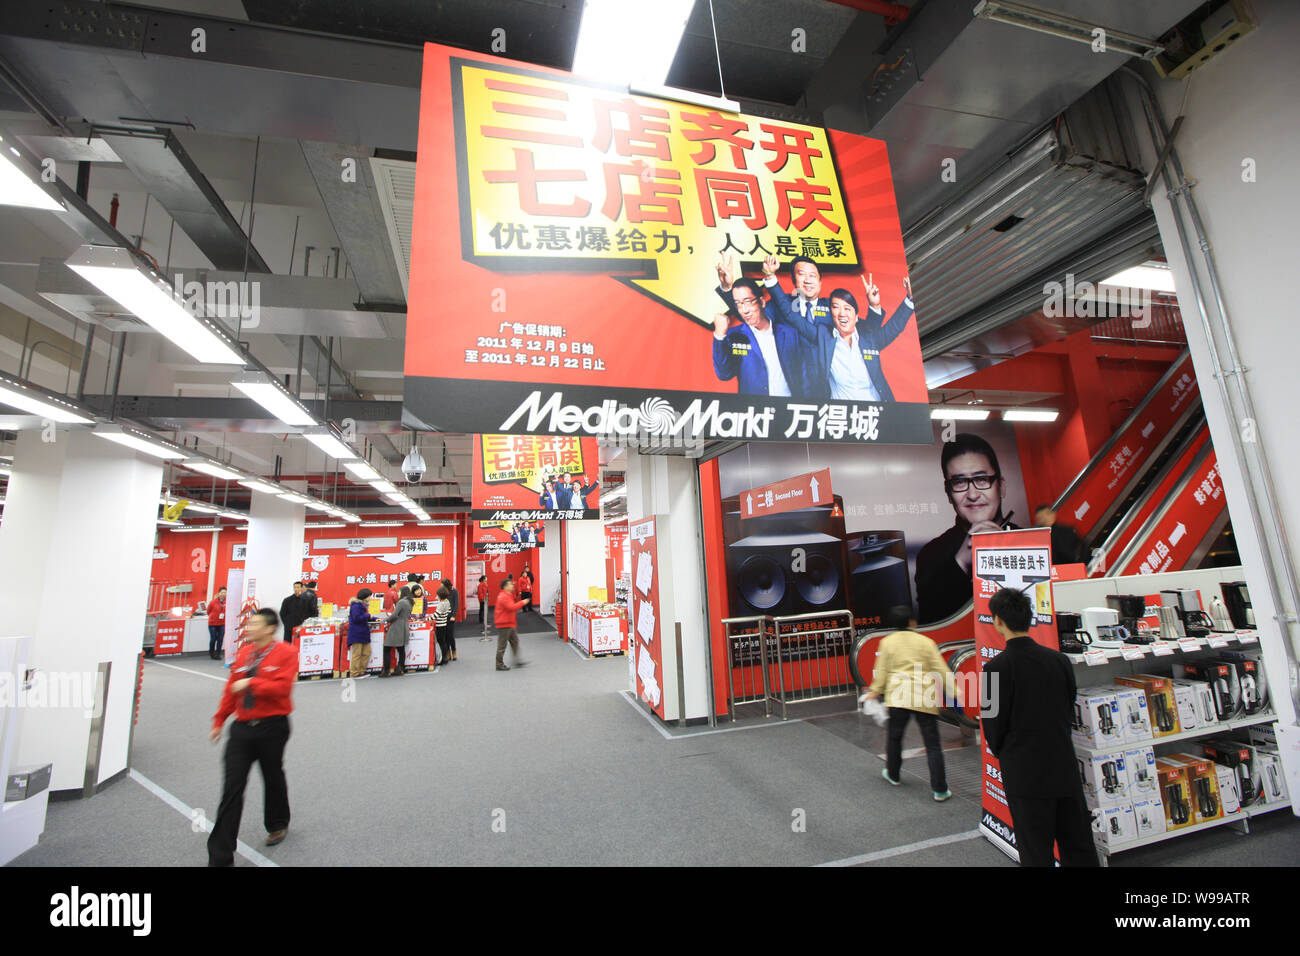 Anzeigen eines Media Markts in Shanghai, China, 9. Dezember 2011. Germanys Metro AG, der weltweit drittgrößte Einzelhändler, beschleunigt sich die Öffnung o Stockfoto